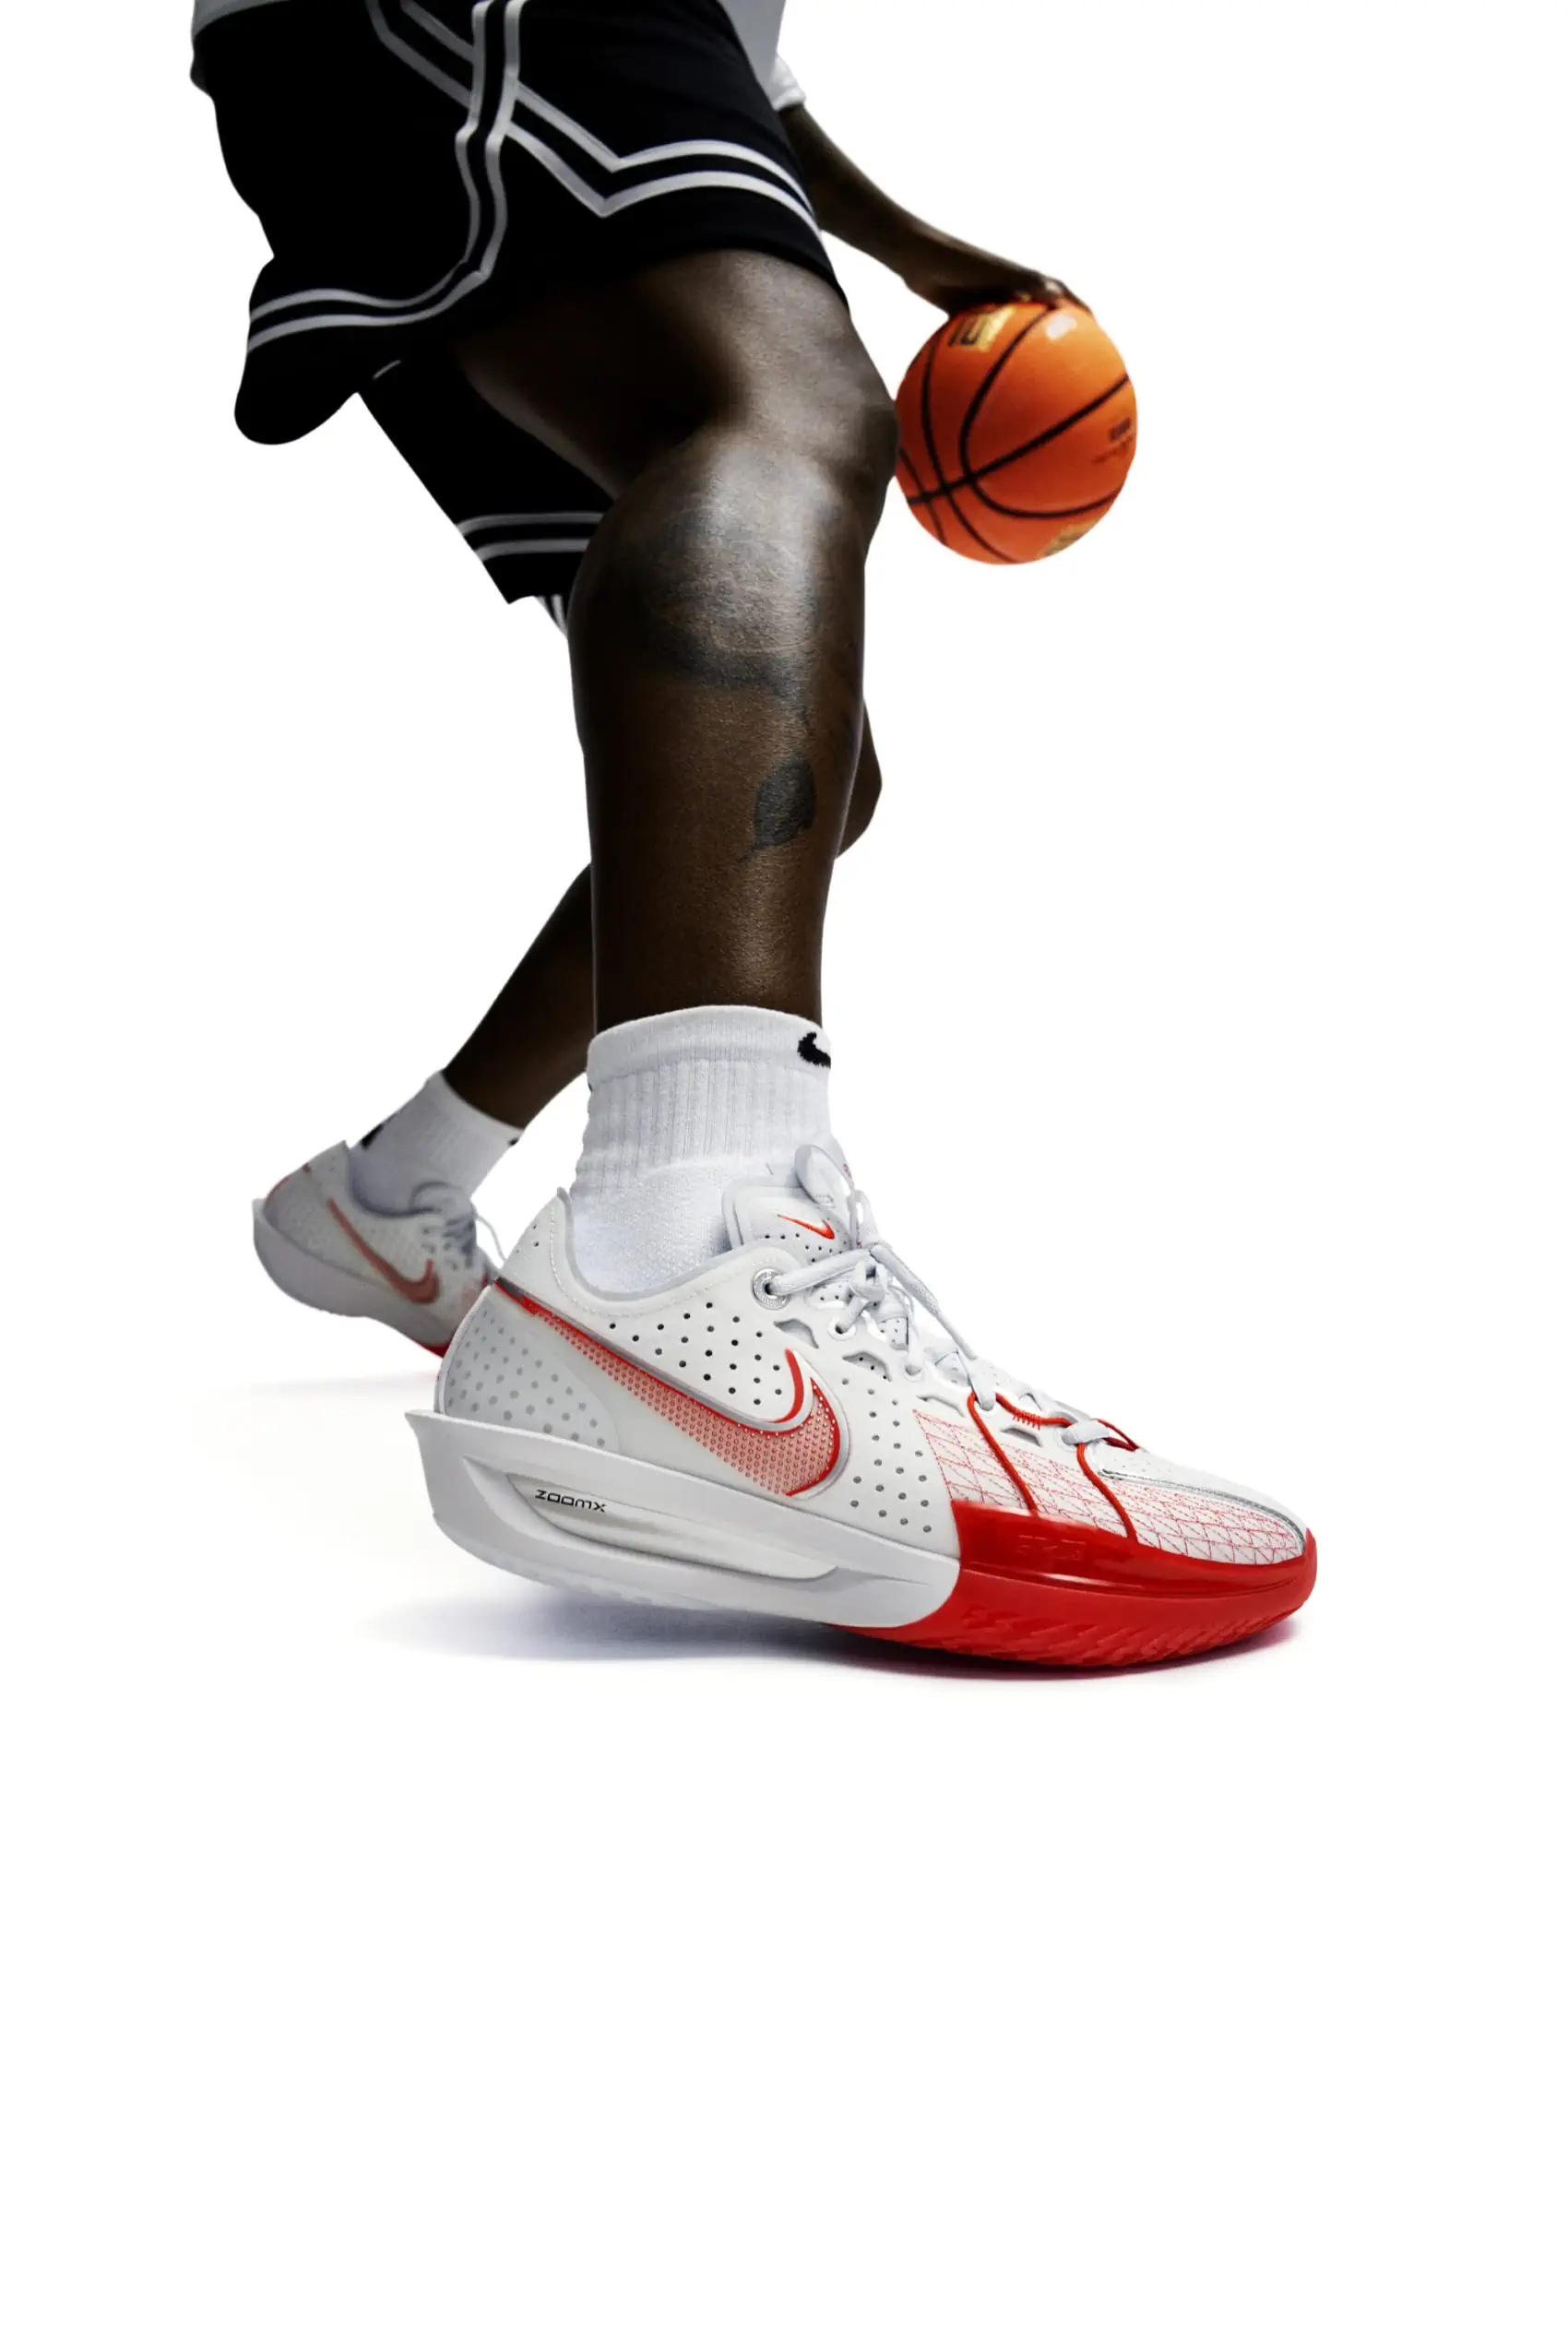 Nike G.T. Cut 3 révolutionne la chaussure de basket-ball avec un design innovant